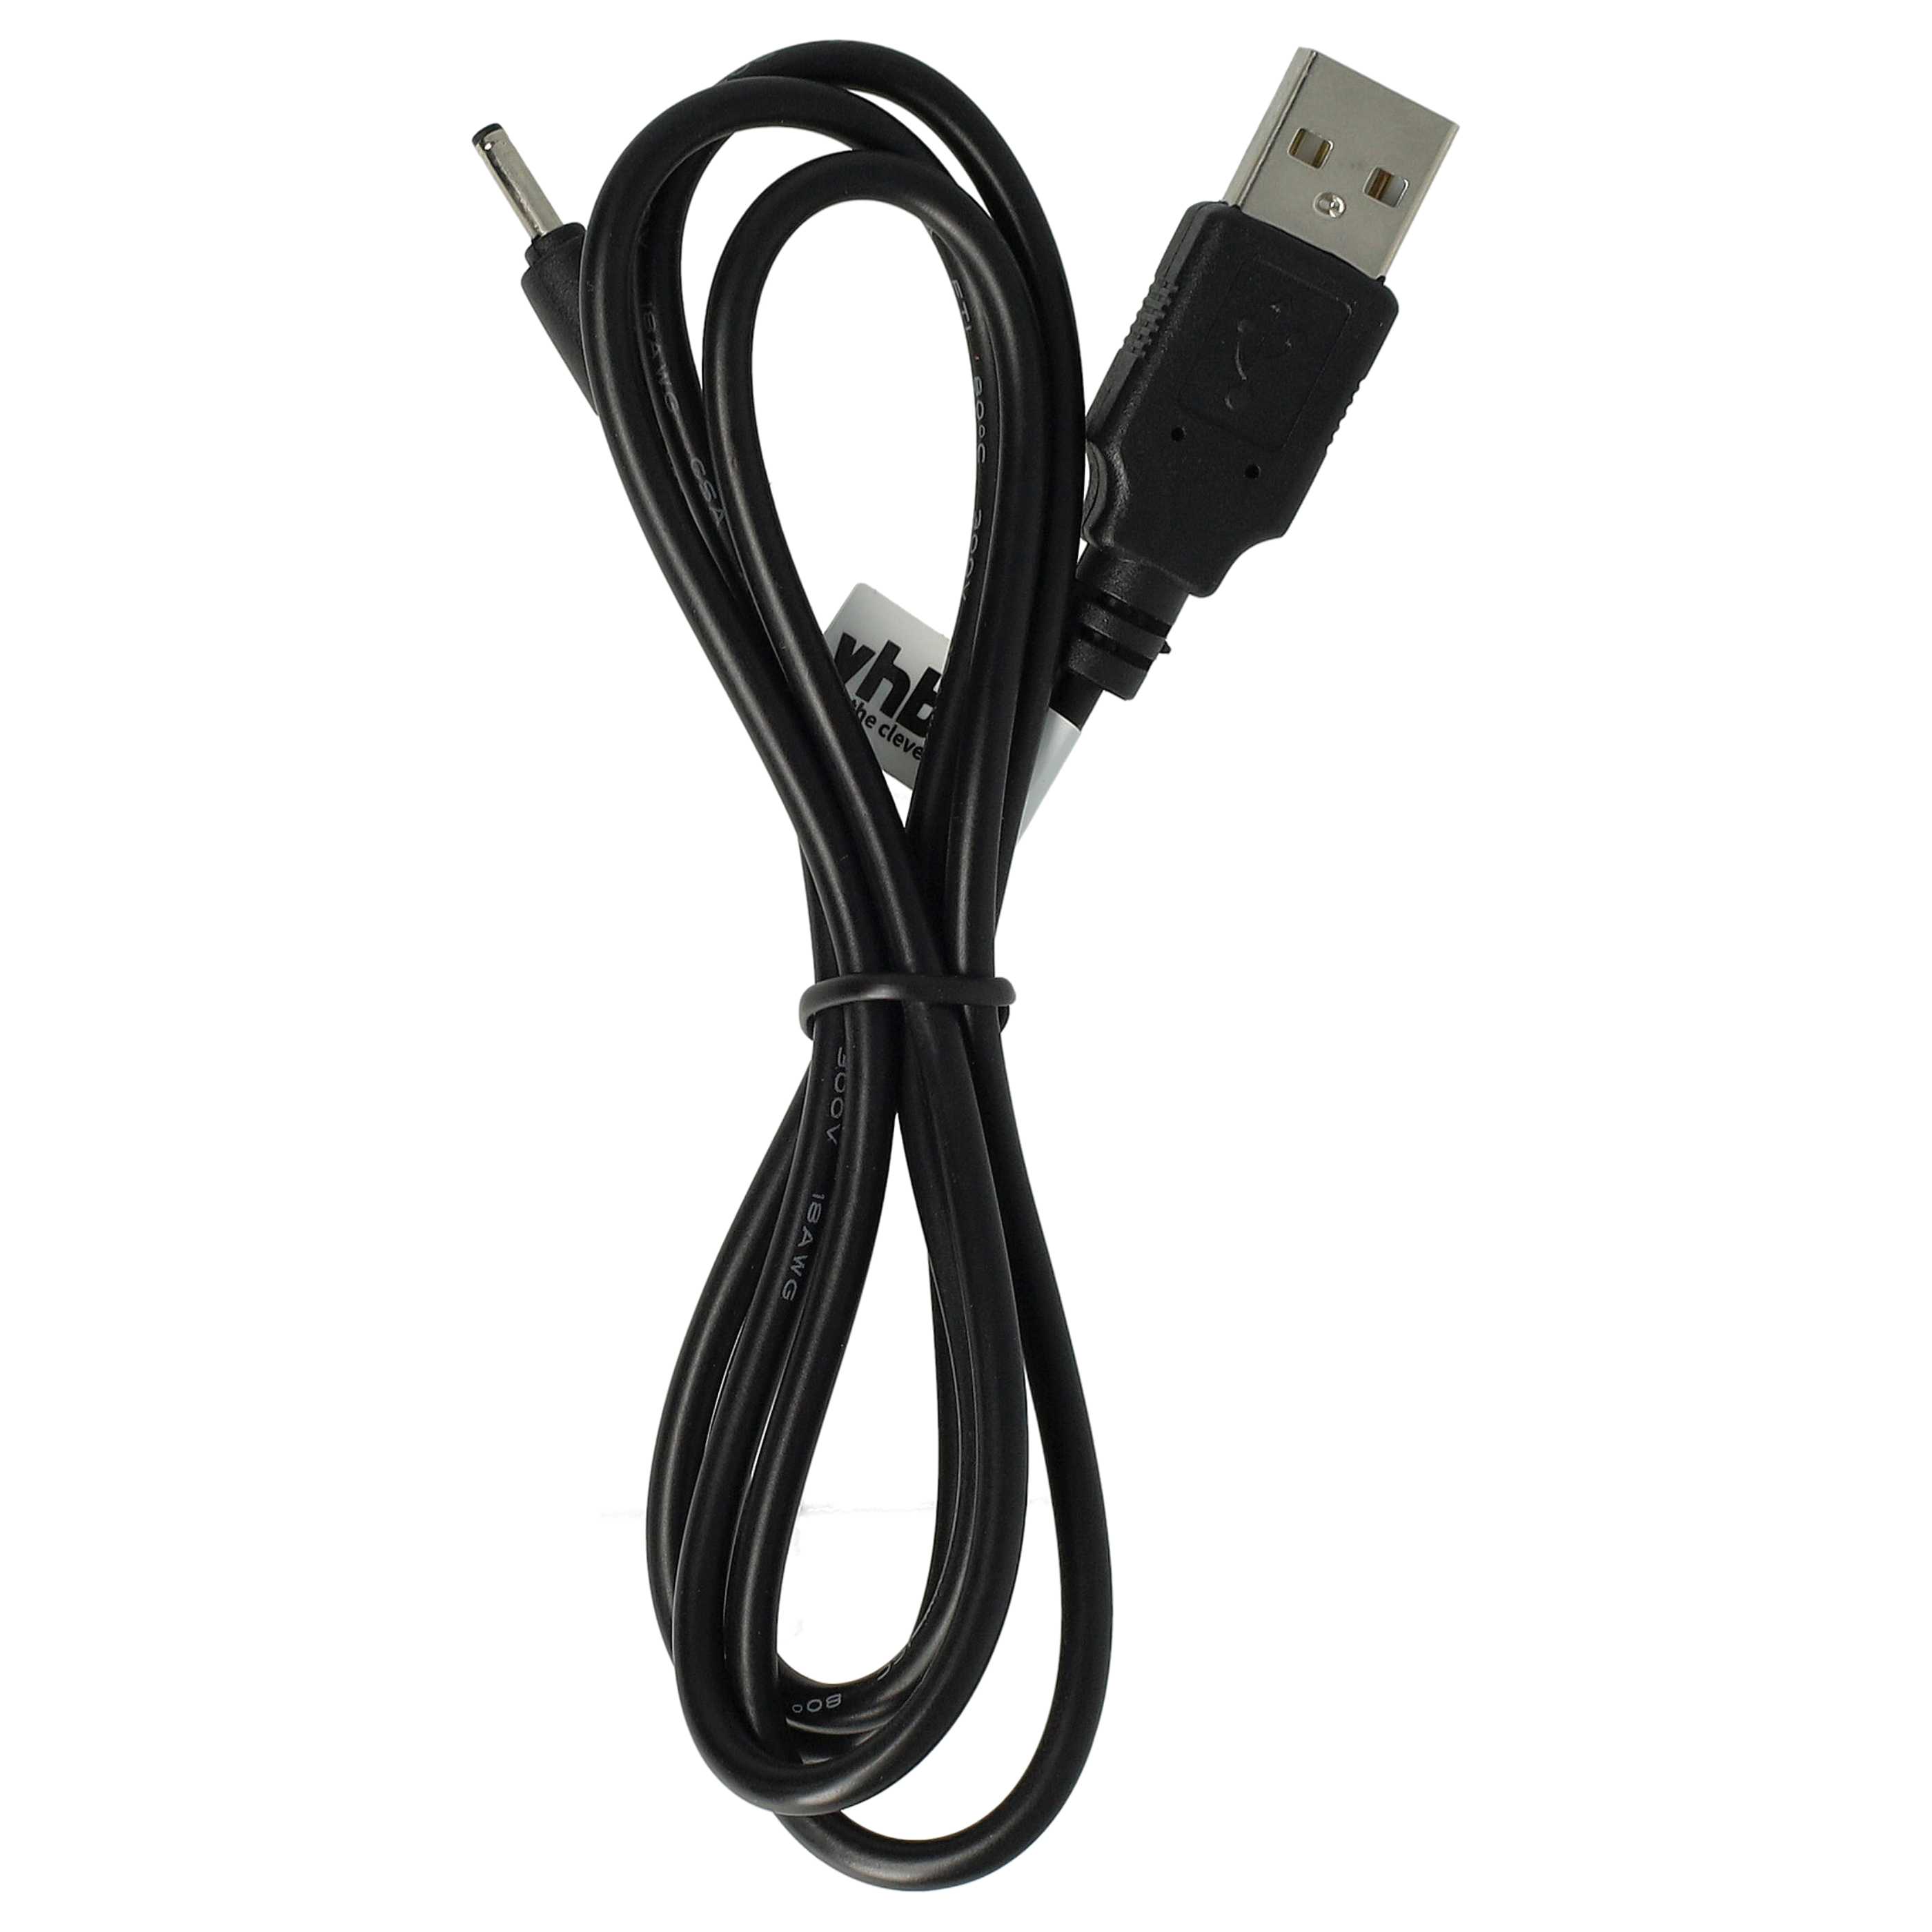 Cable de carga USB para tablets Ampe, etc. - 100 cm